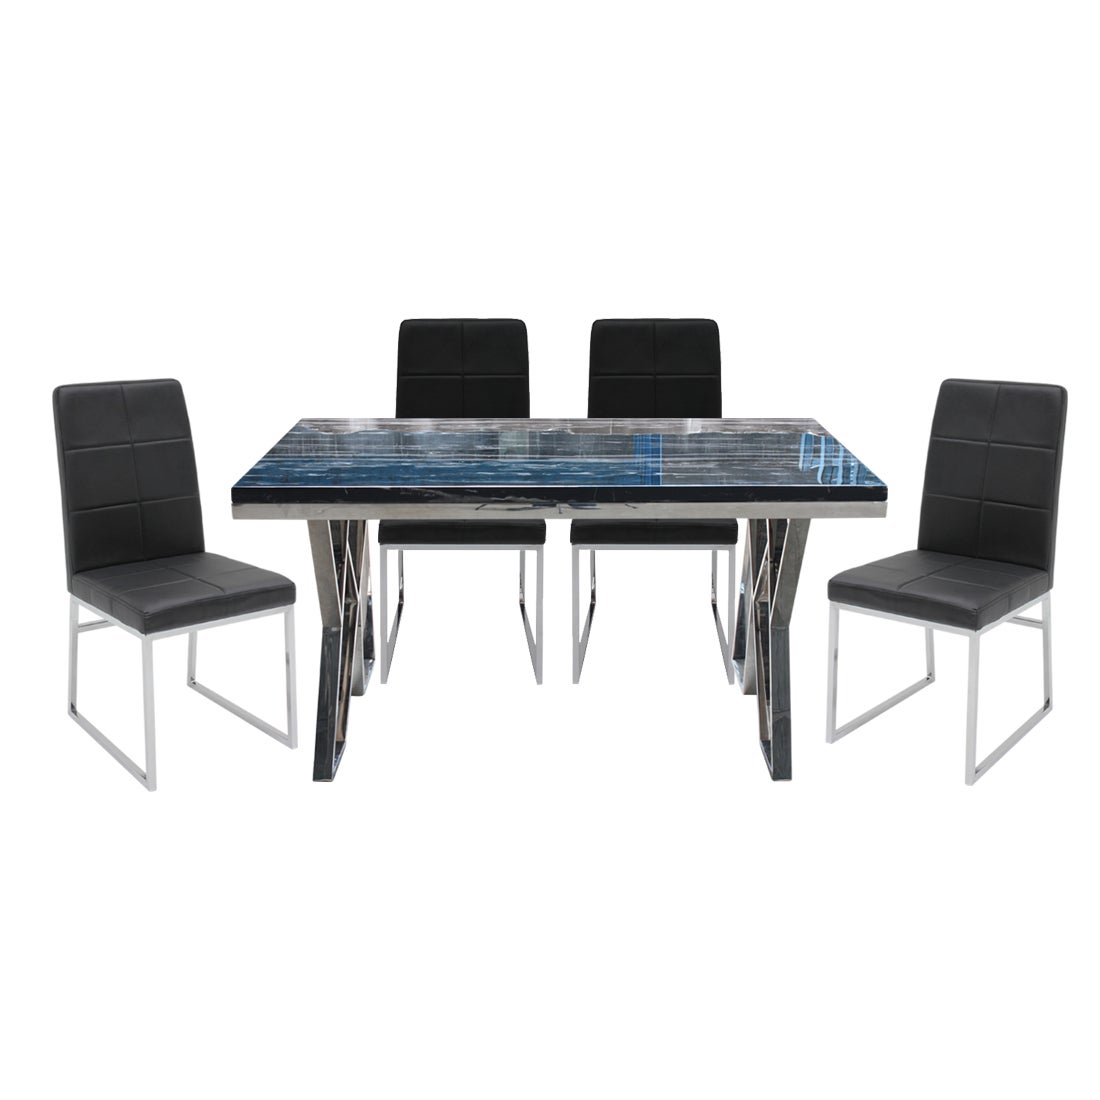 ชุดโต๊ะอาหาร Apollo หินดำลาย & เก้าอี้ Talk ดำ x4 สีดำ01